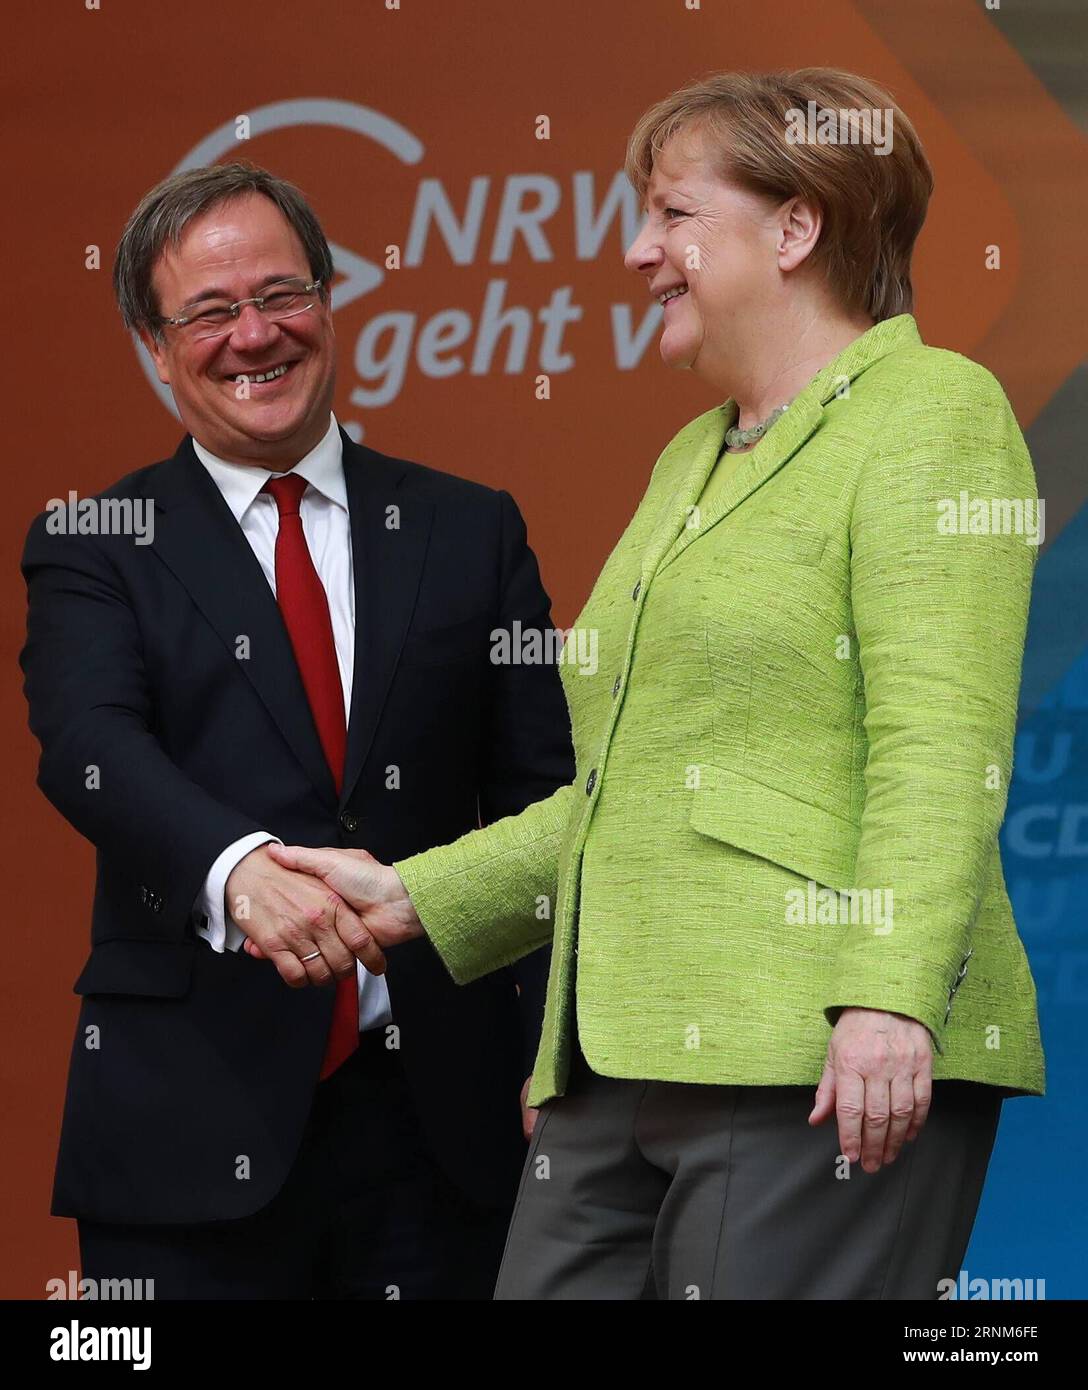 Bilder des Tages 170513 -- AQUISGRANA, 13 maggio 2017 -- Cancelliere tedesco Angela Merkel R e Armin Laschet, leader CDU dell'Unione Cristiana Democratica nella Renania settentrionale-Vestfalia, partecipano alla manifestazione finale della campagna CDU per le elezioni di stato nella Renania settentrionale-Vestfalia ad Aquisgrana, Germania, 13 maggio 2017. Zjy GERMANIA-AQUISGRANA-CDU-ELEZIONI STATALI LuoxHuanhuan PUBLICATIONxNOTxINxCHN Foto Stock